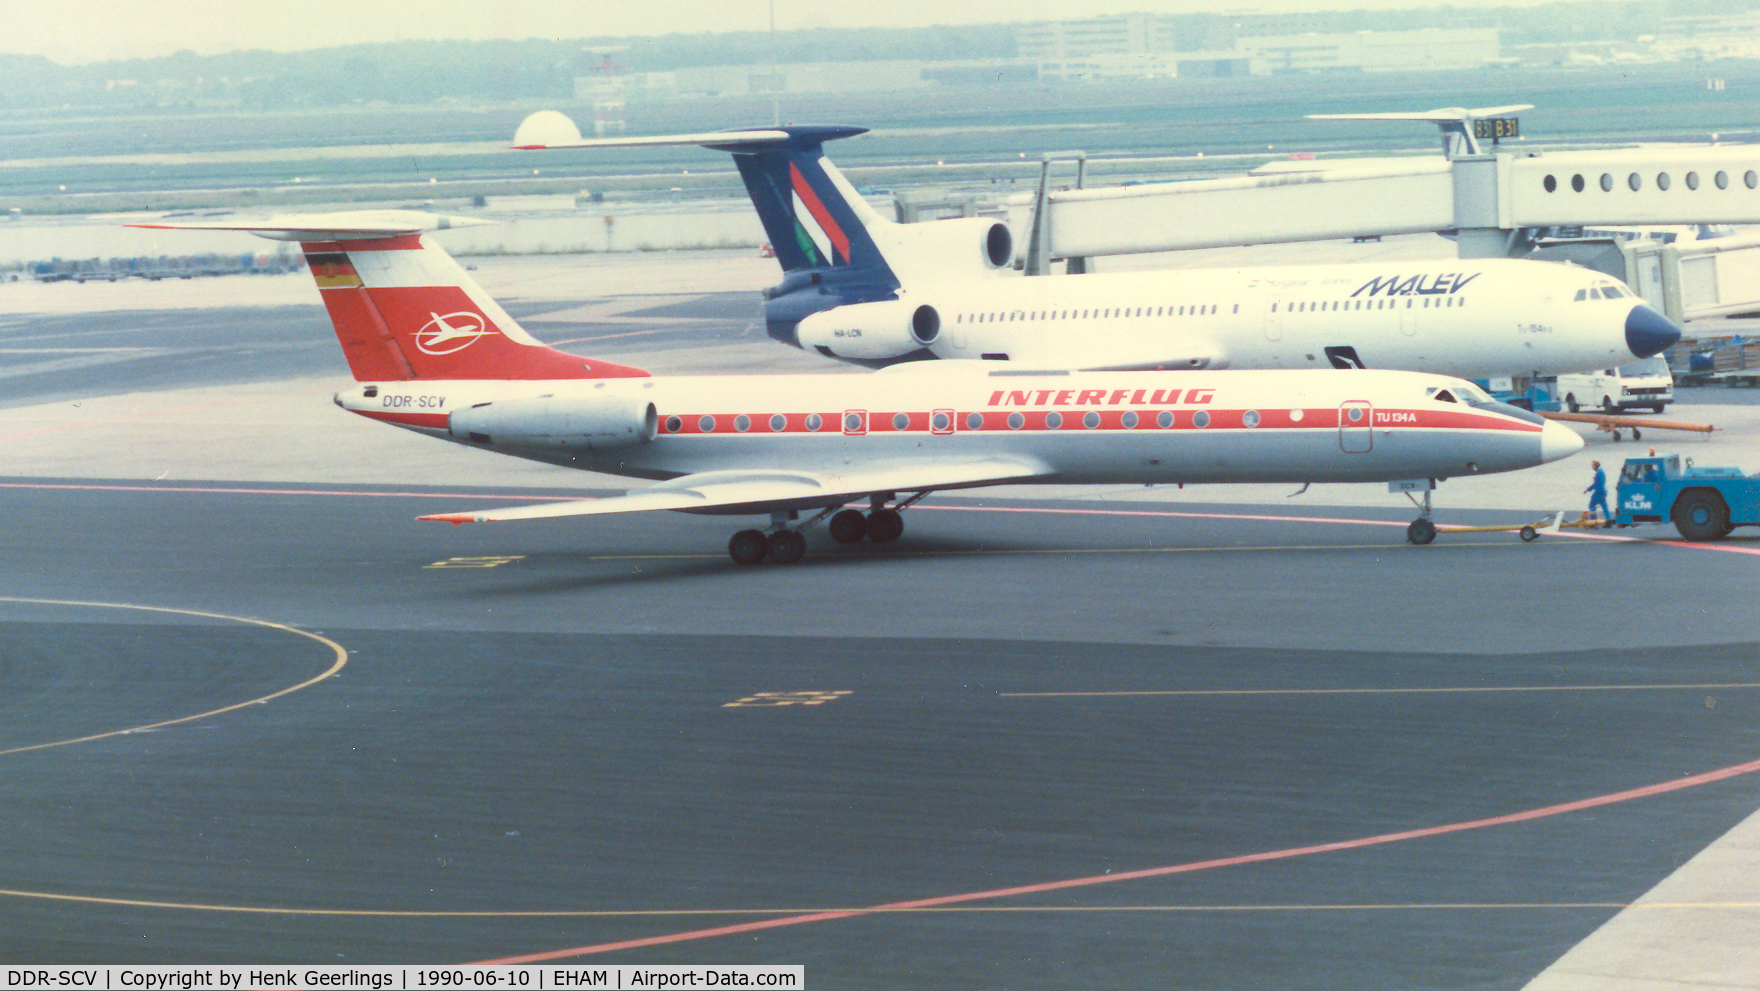 DDR-SCV, 1974 Tupolev Tu-134A C/N 4312095, Interflug